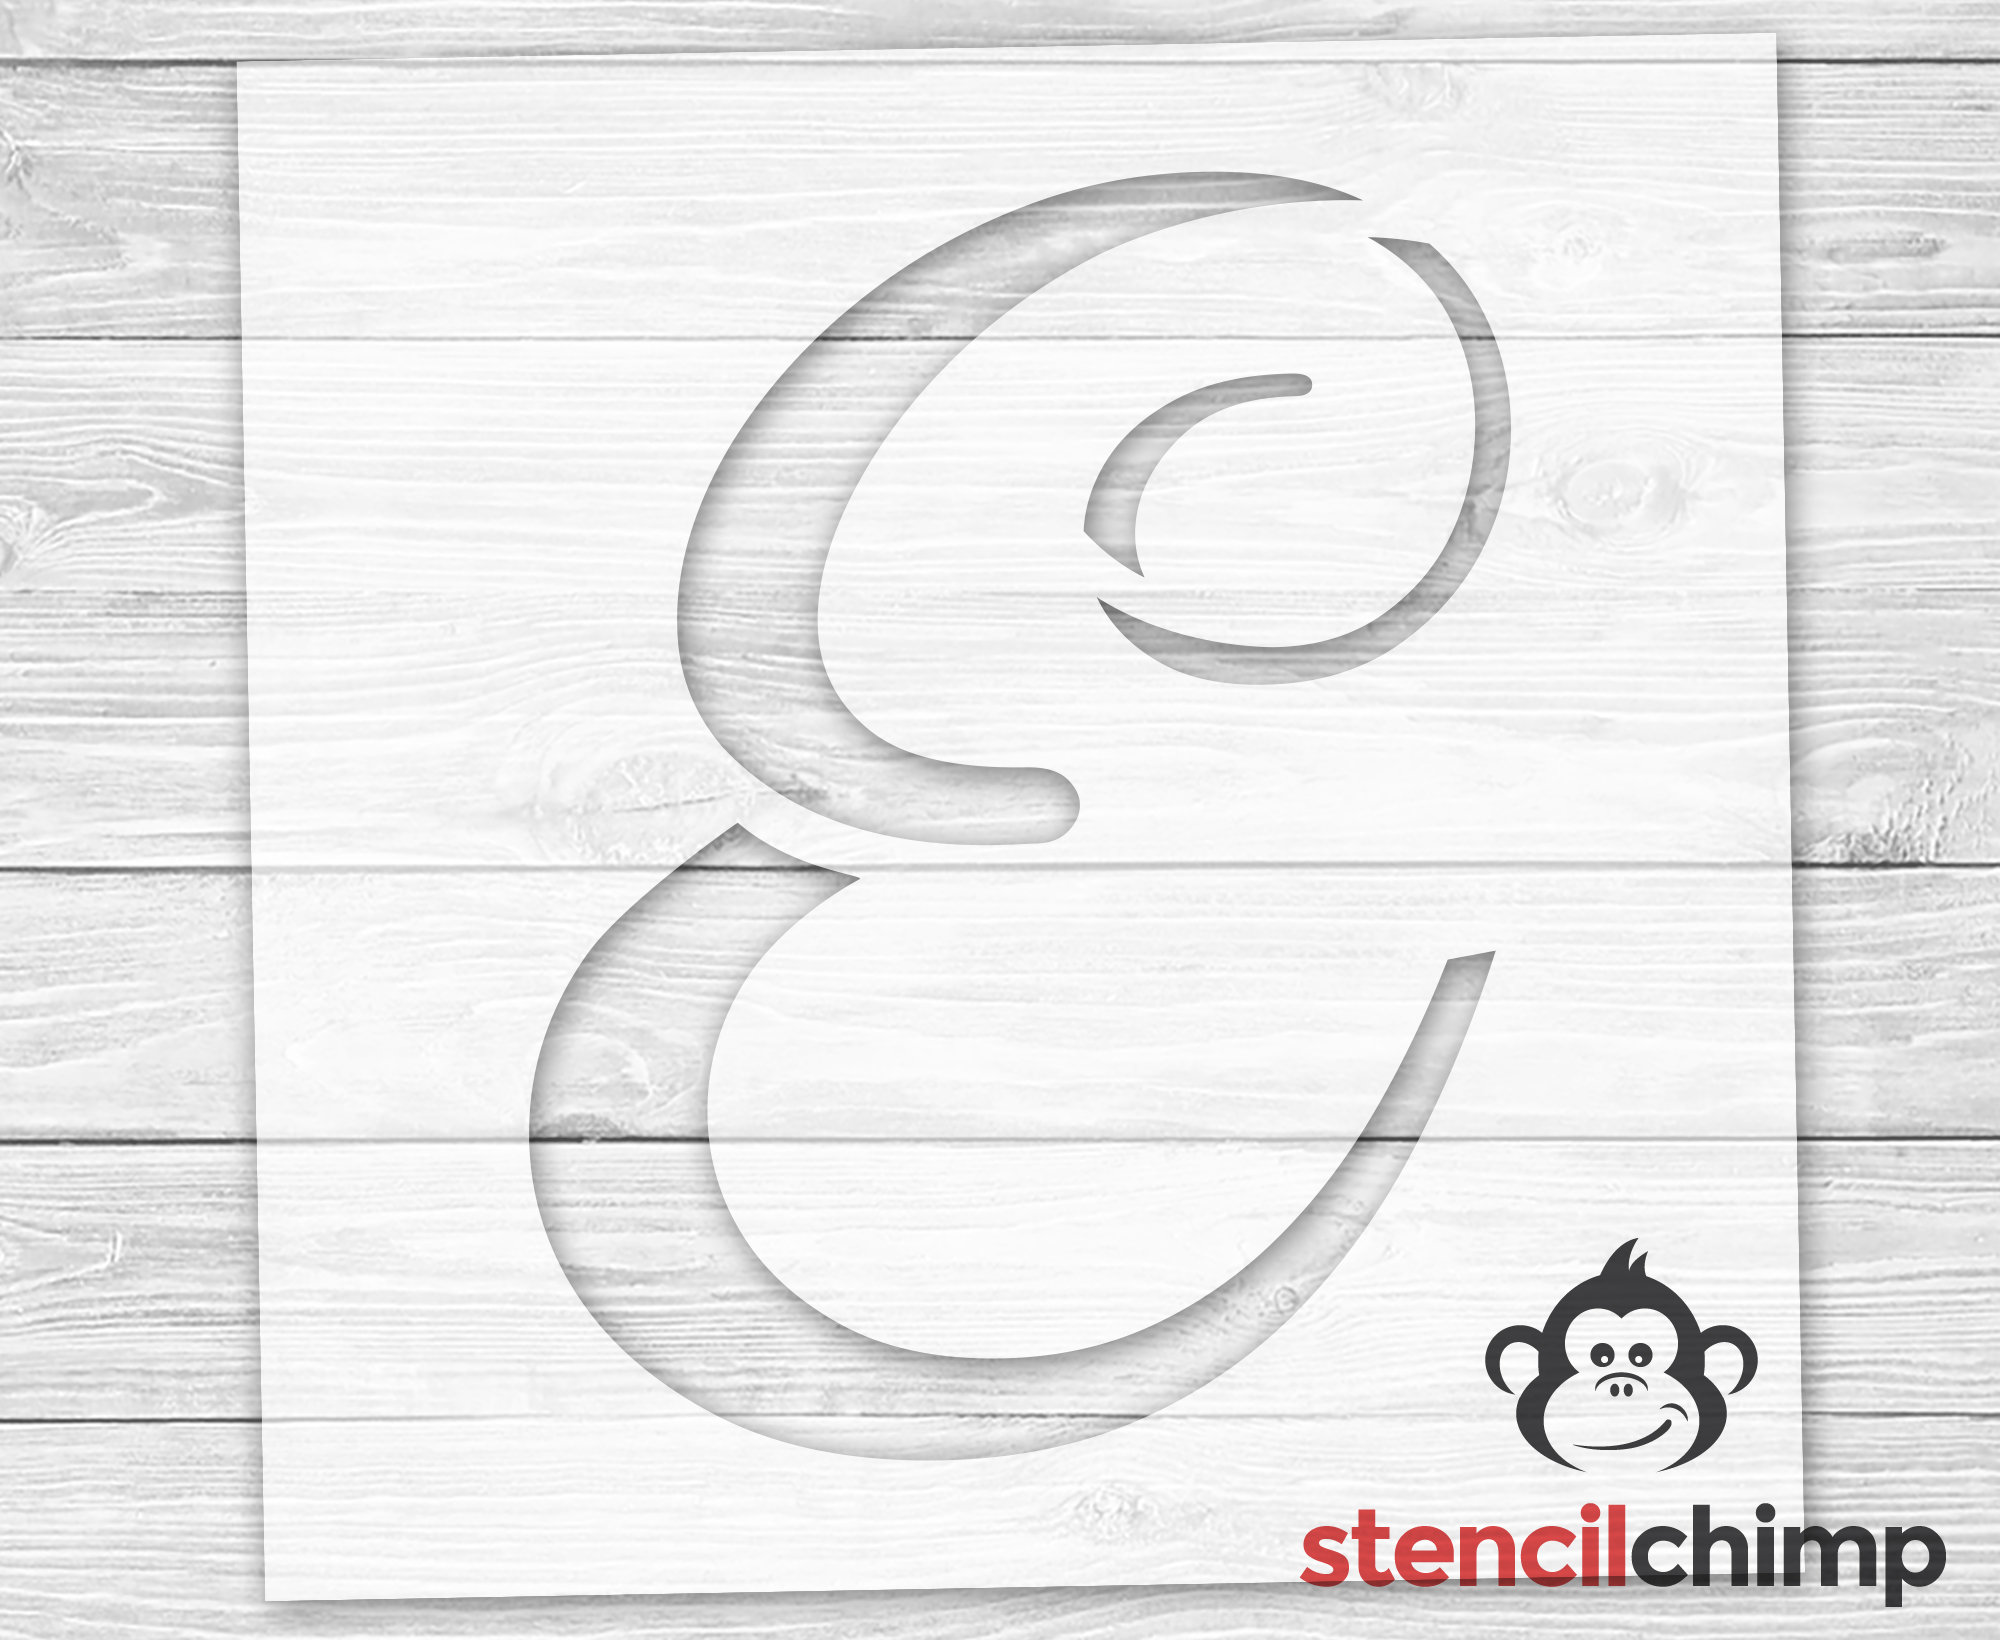 Stencil Reusable Plastic Home Decor Script Stencil Vinyl Monogram Letter Stencil Letter E Stencil for Sign Name Stencil Wedding Gift